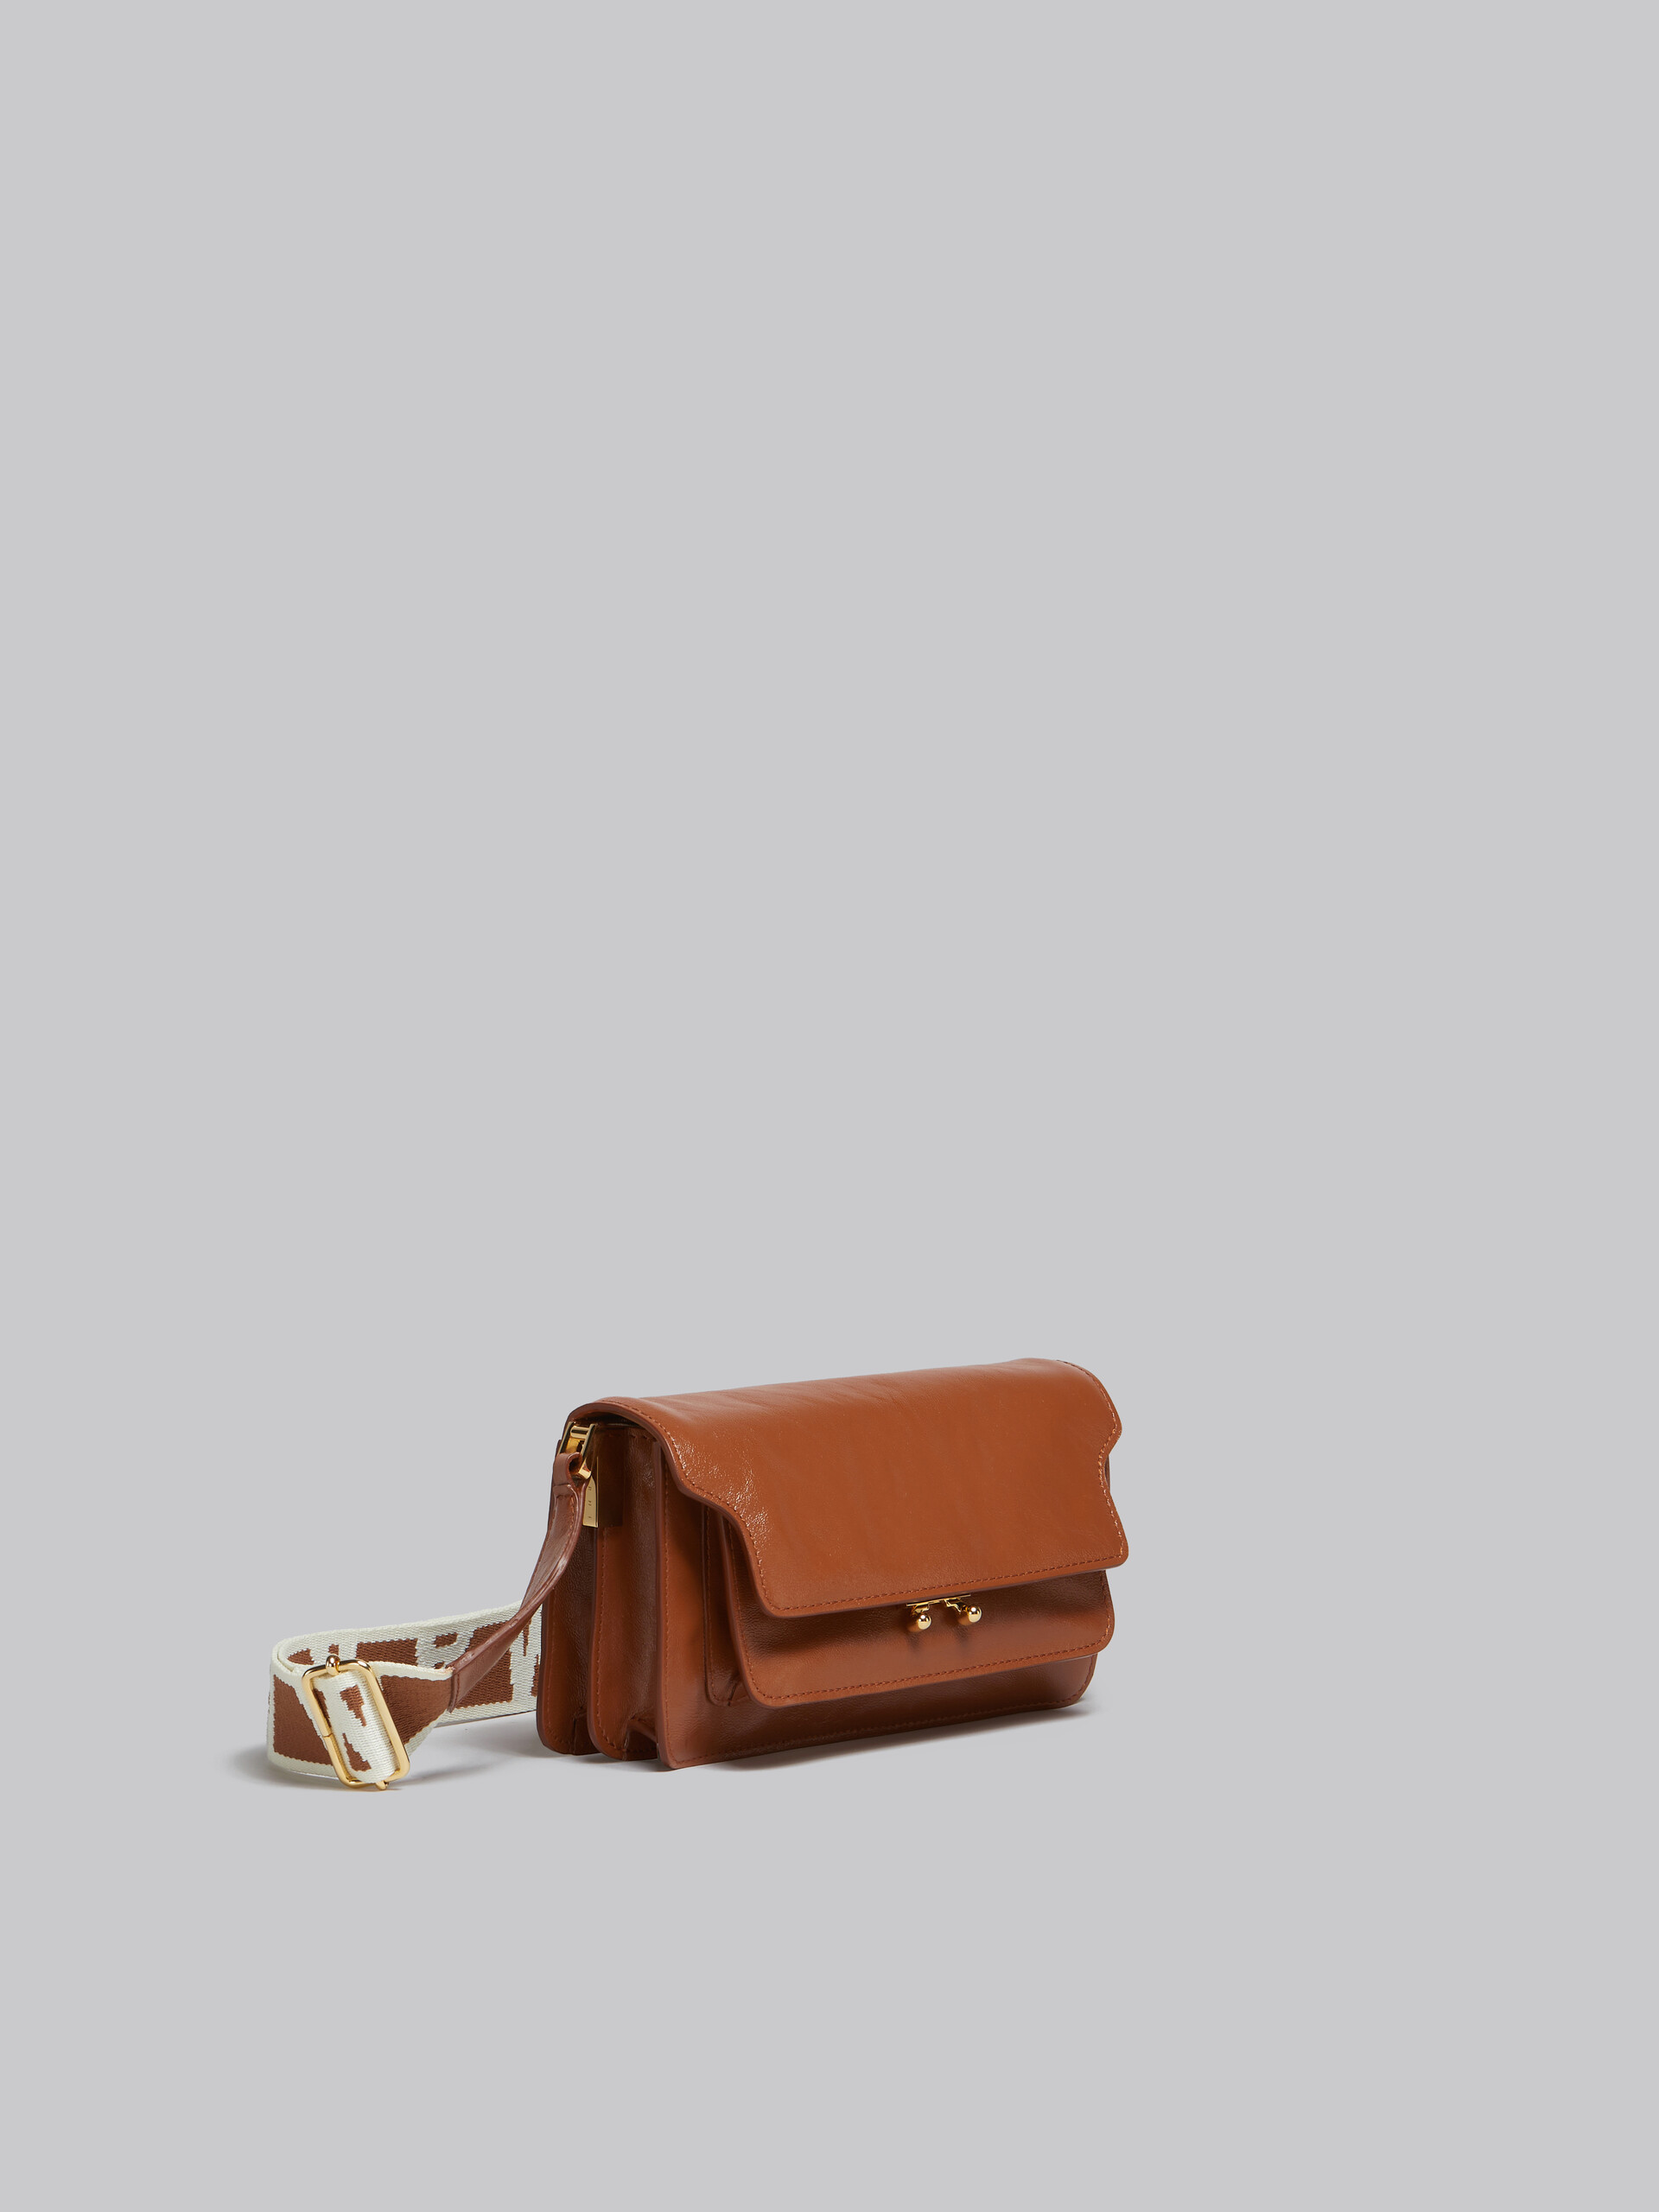 Trunk Soft Bag E/W in pelle marrone con tracolla logata - Borse a spalla - Image 6